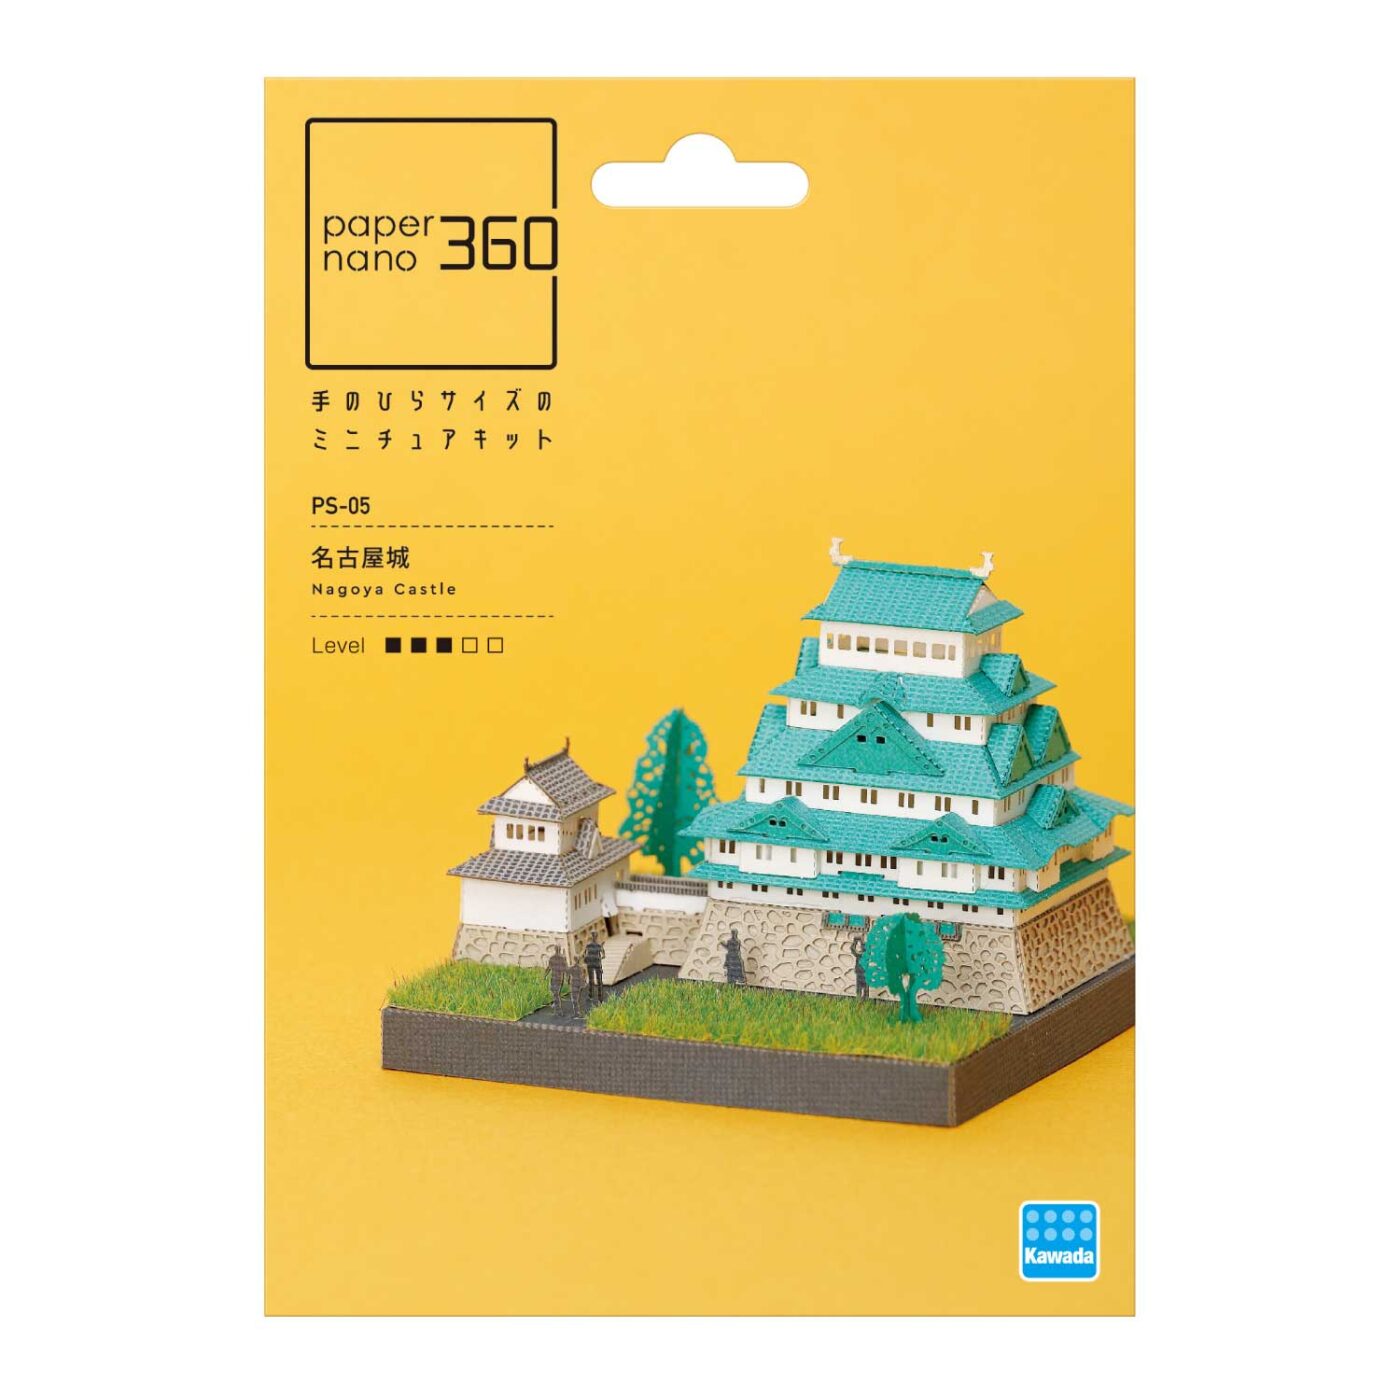 名古屋城の商品画像